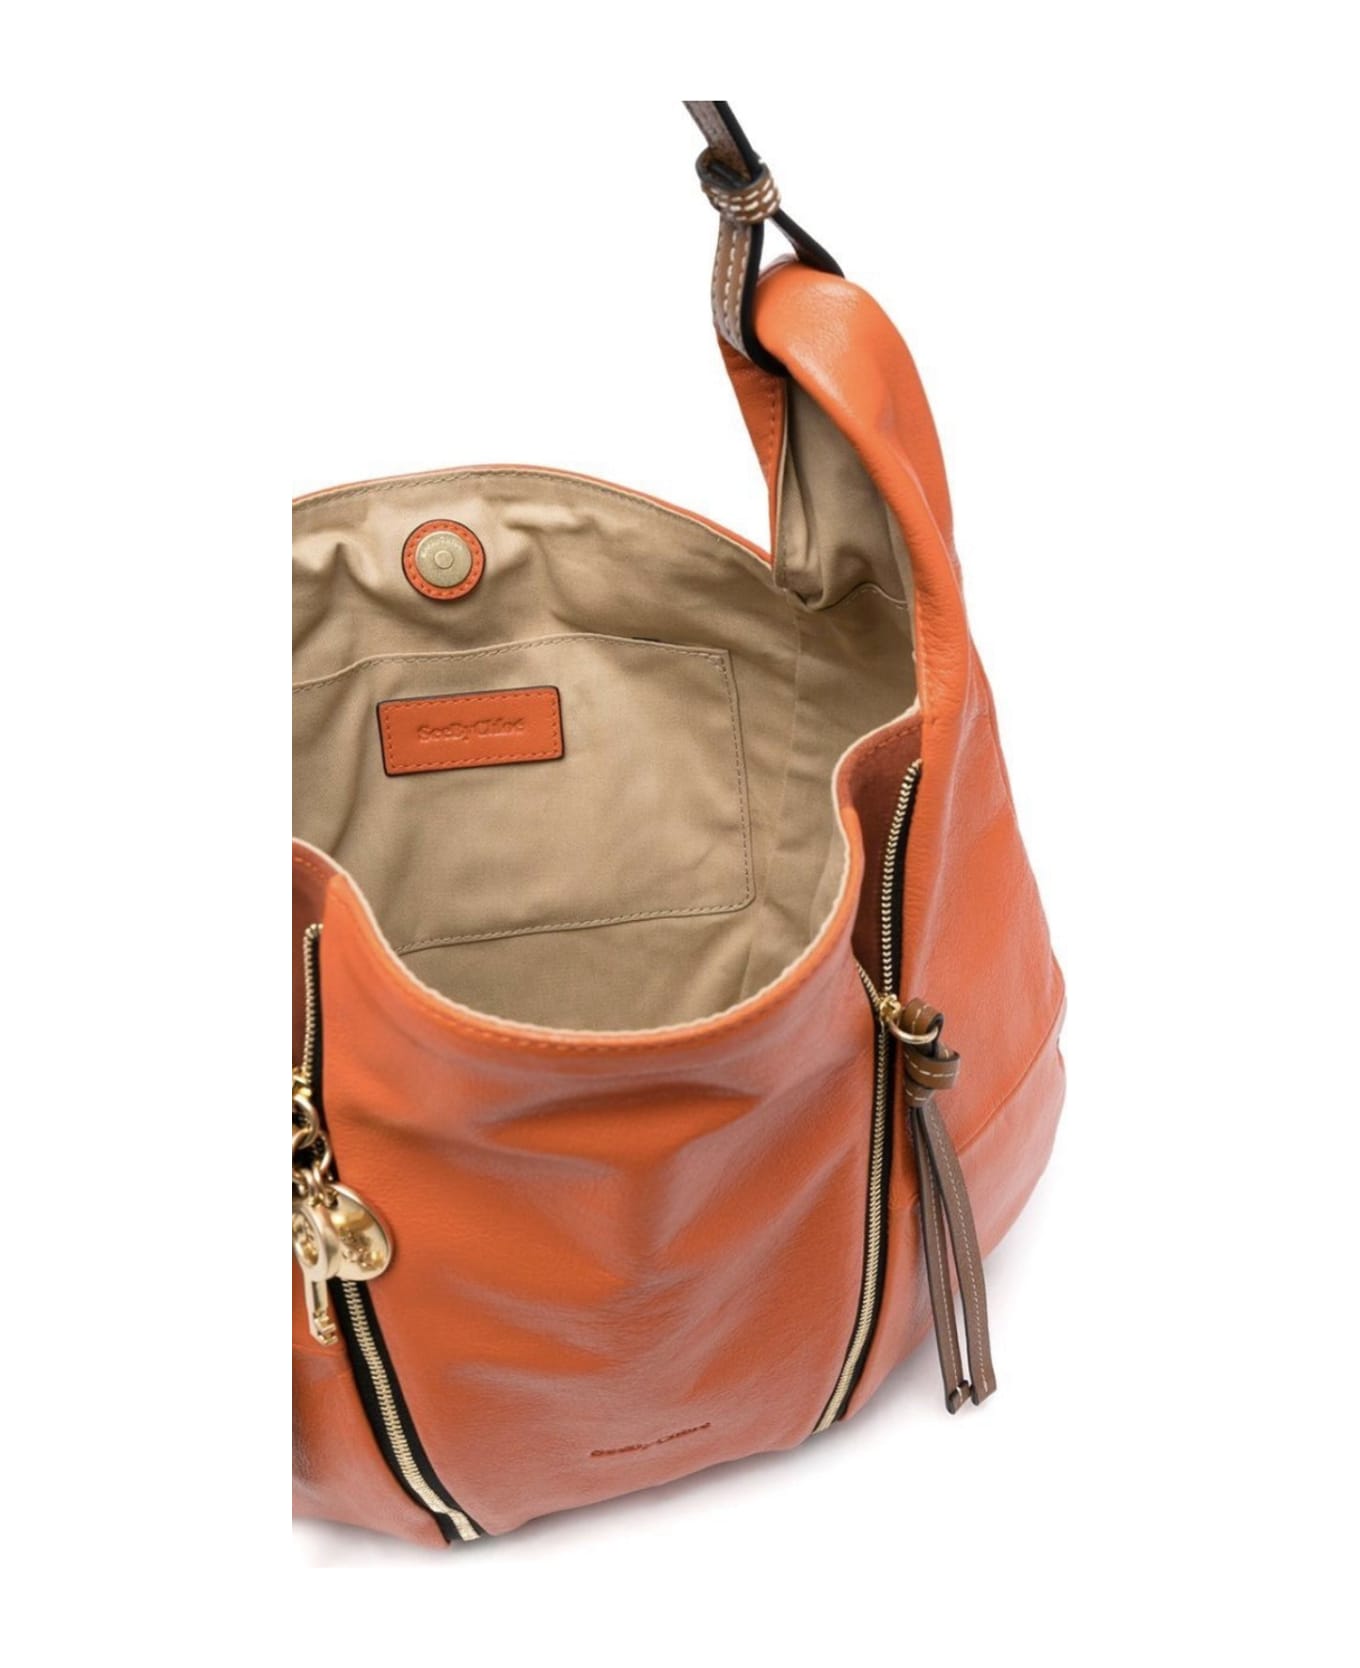 See by Chloé Idra Leather Shoulder Bag - Orange